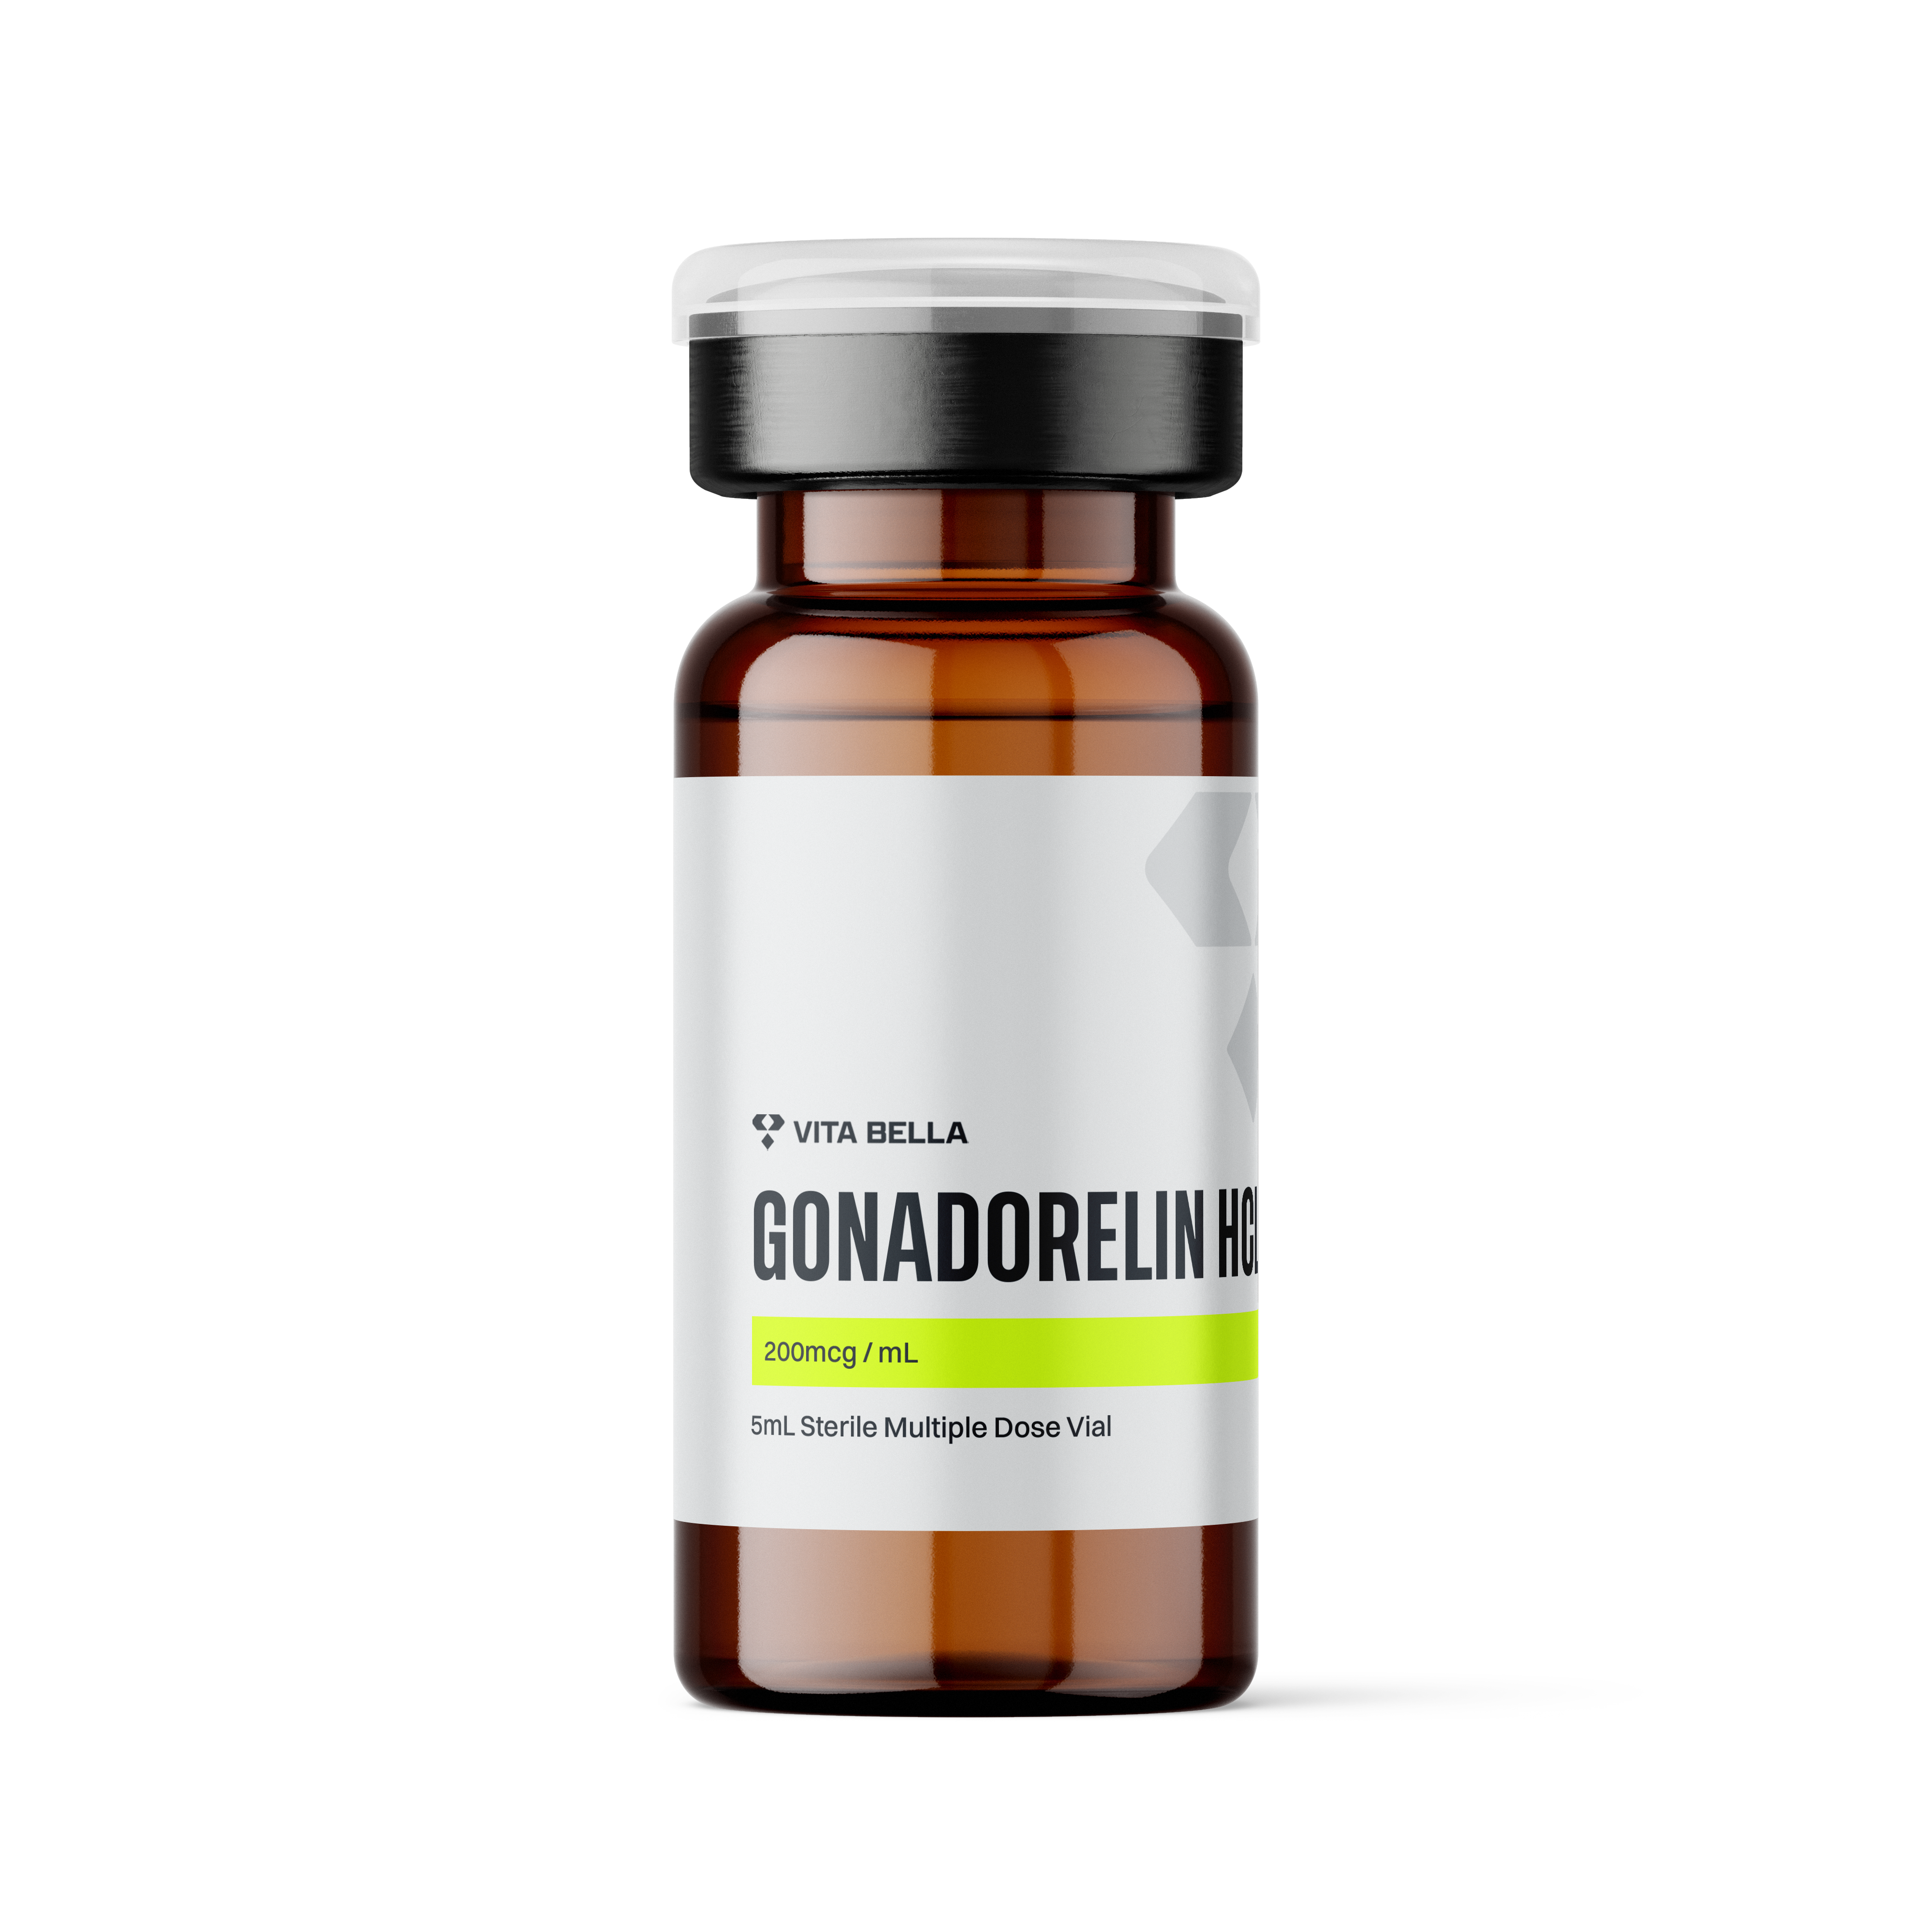 Gonadorelin HCL vial